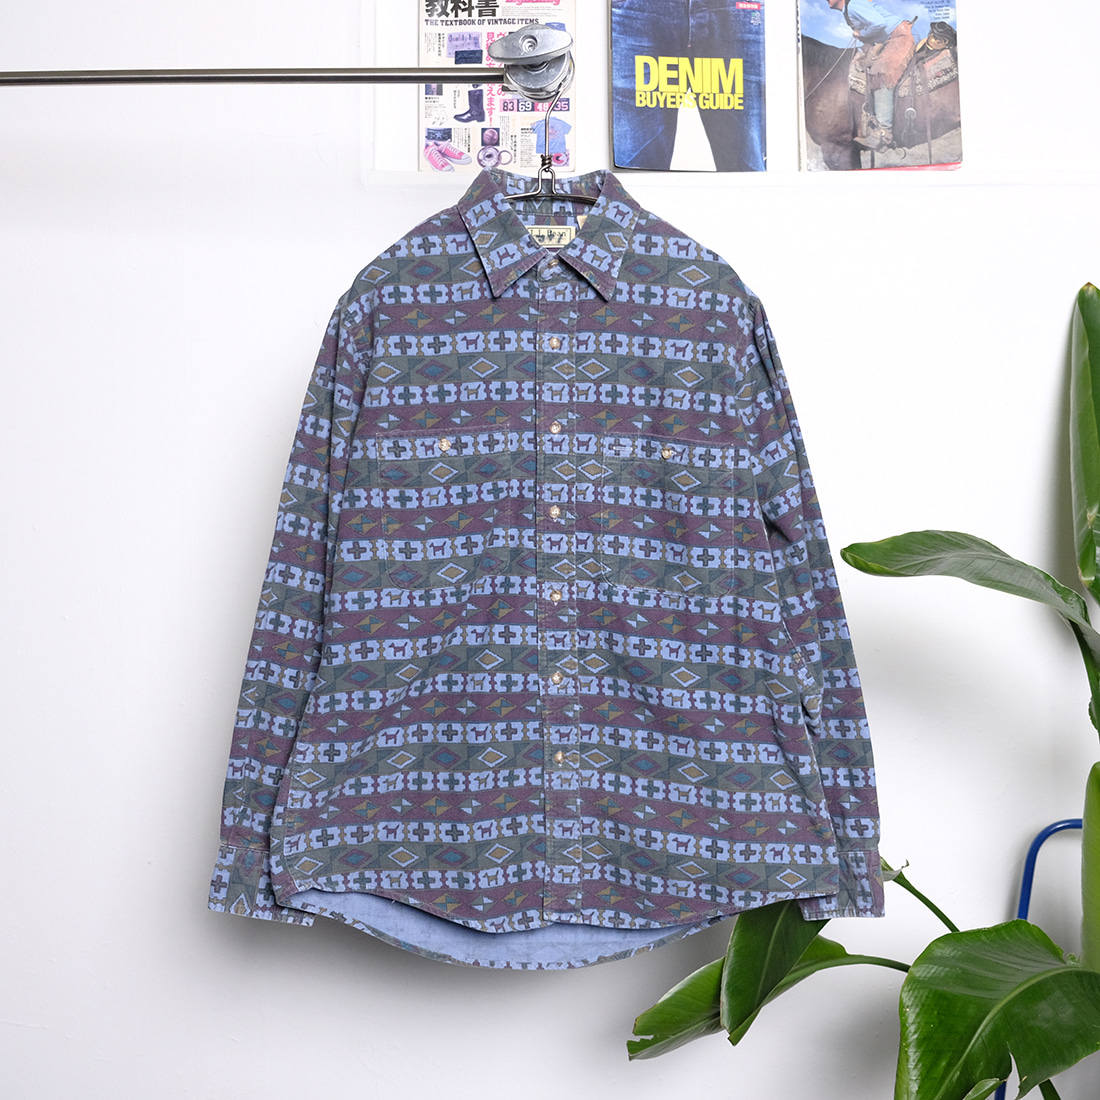 엘엘빈 / Made in usa  Llbean 80s vintage flannel shirt